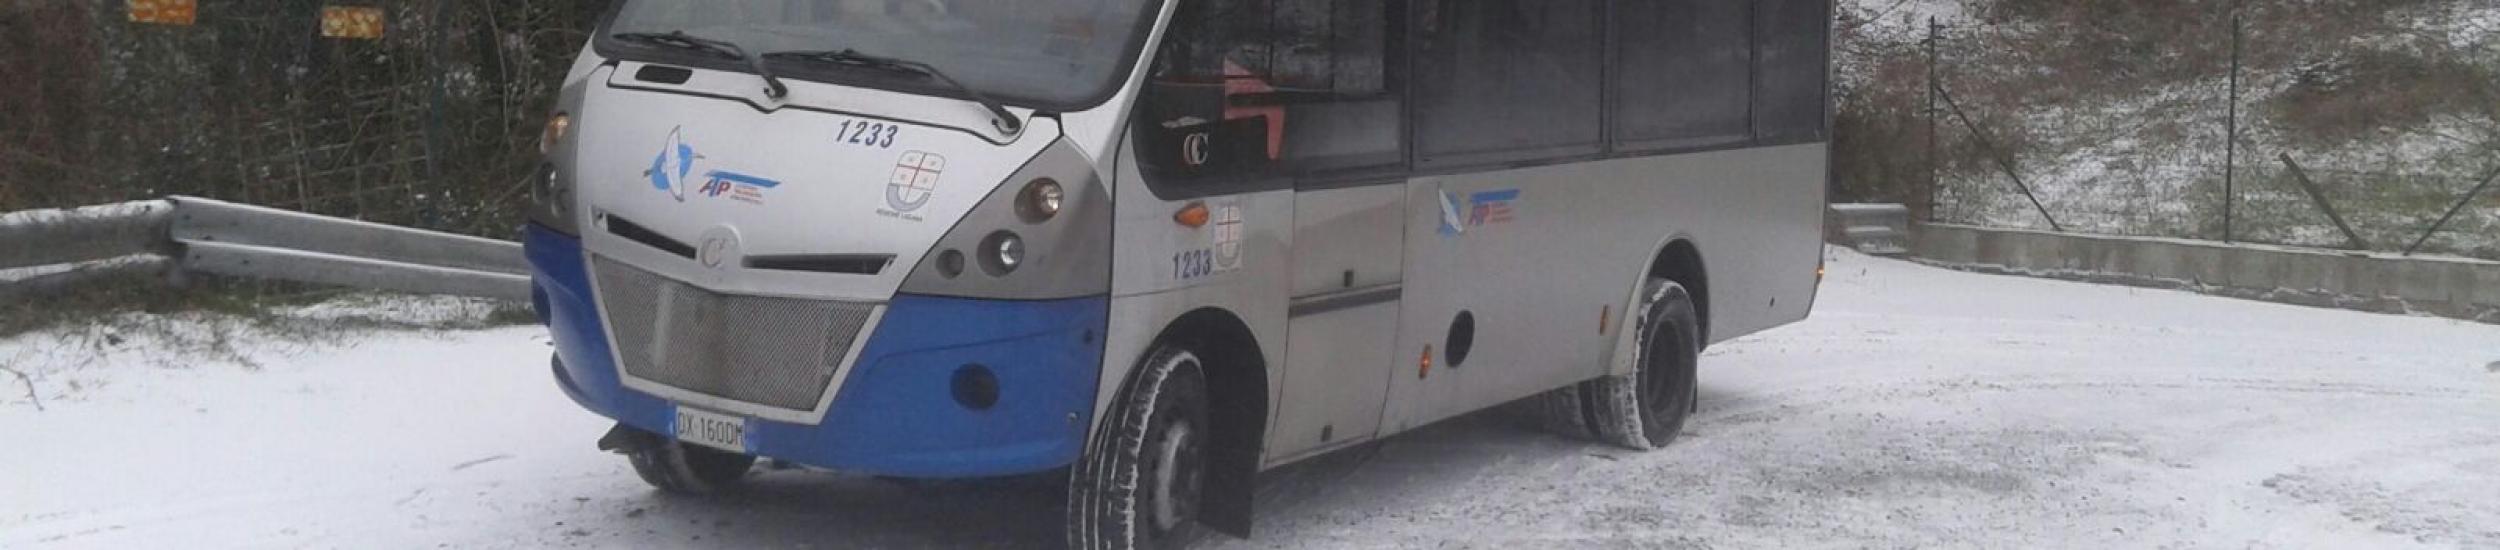 bus nella neve